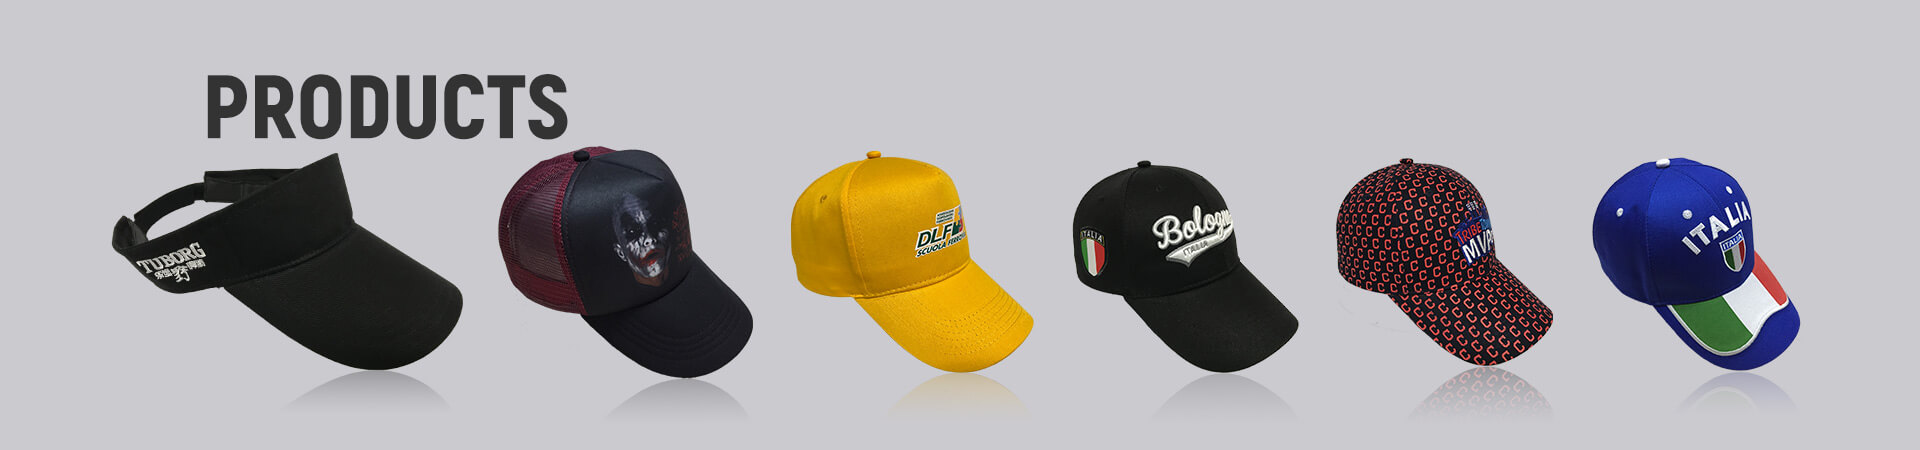 Impresión de sombrero de camionero Archives - Gorra de béisbol, gorra deportiva, gorra de golf, gorra de pescador, gorra de camionero